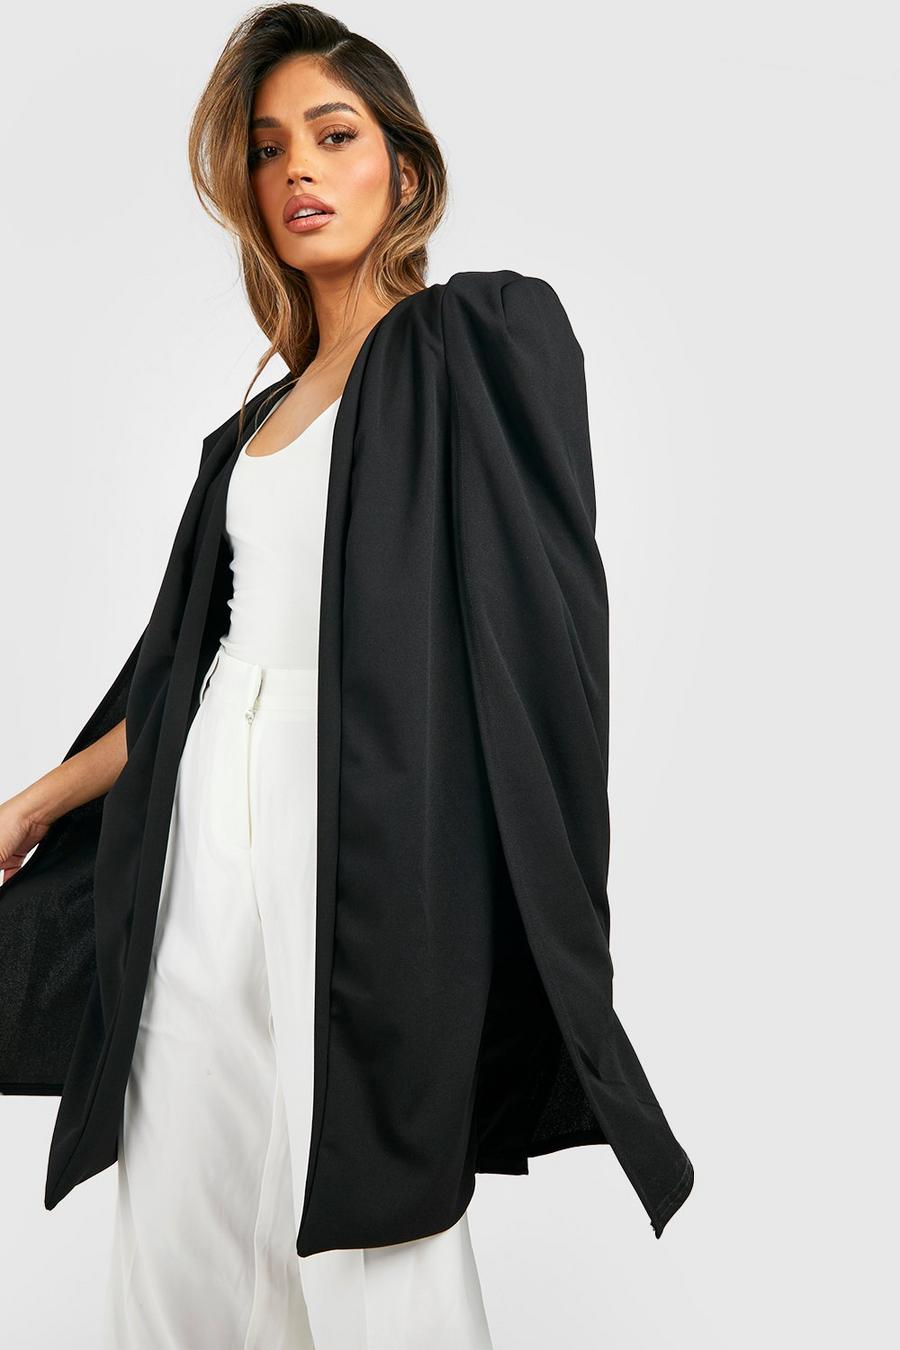 Veste légère longue style cape en tissu crêpe, Noir black